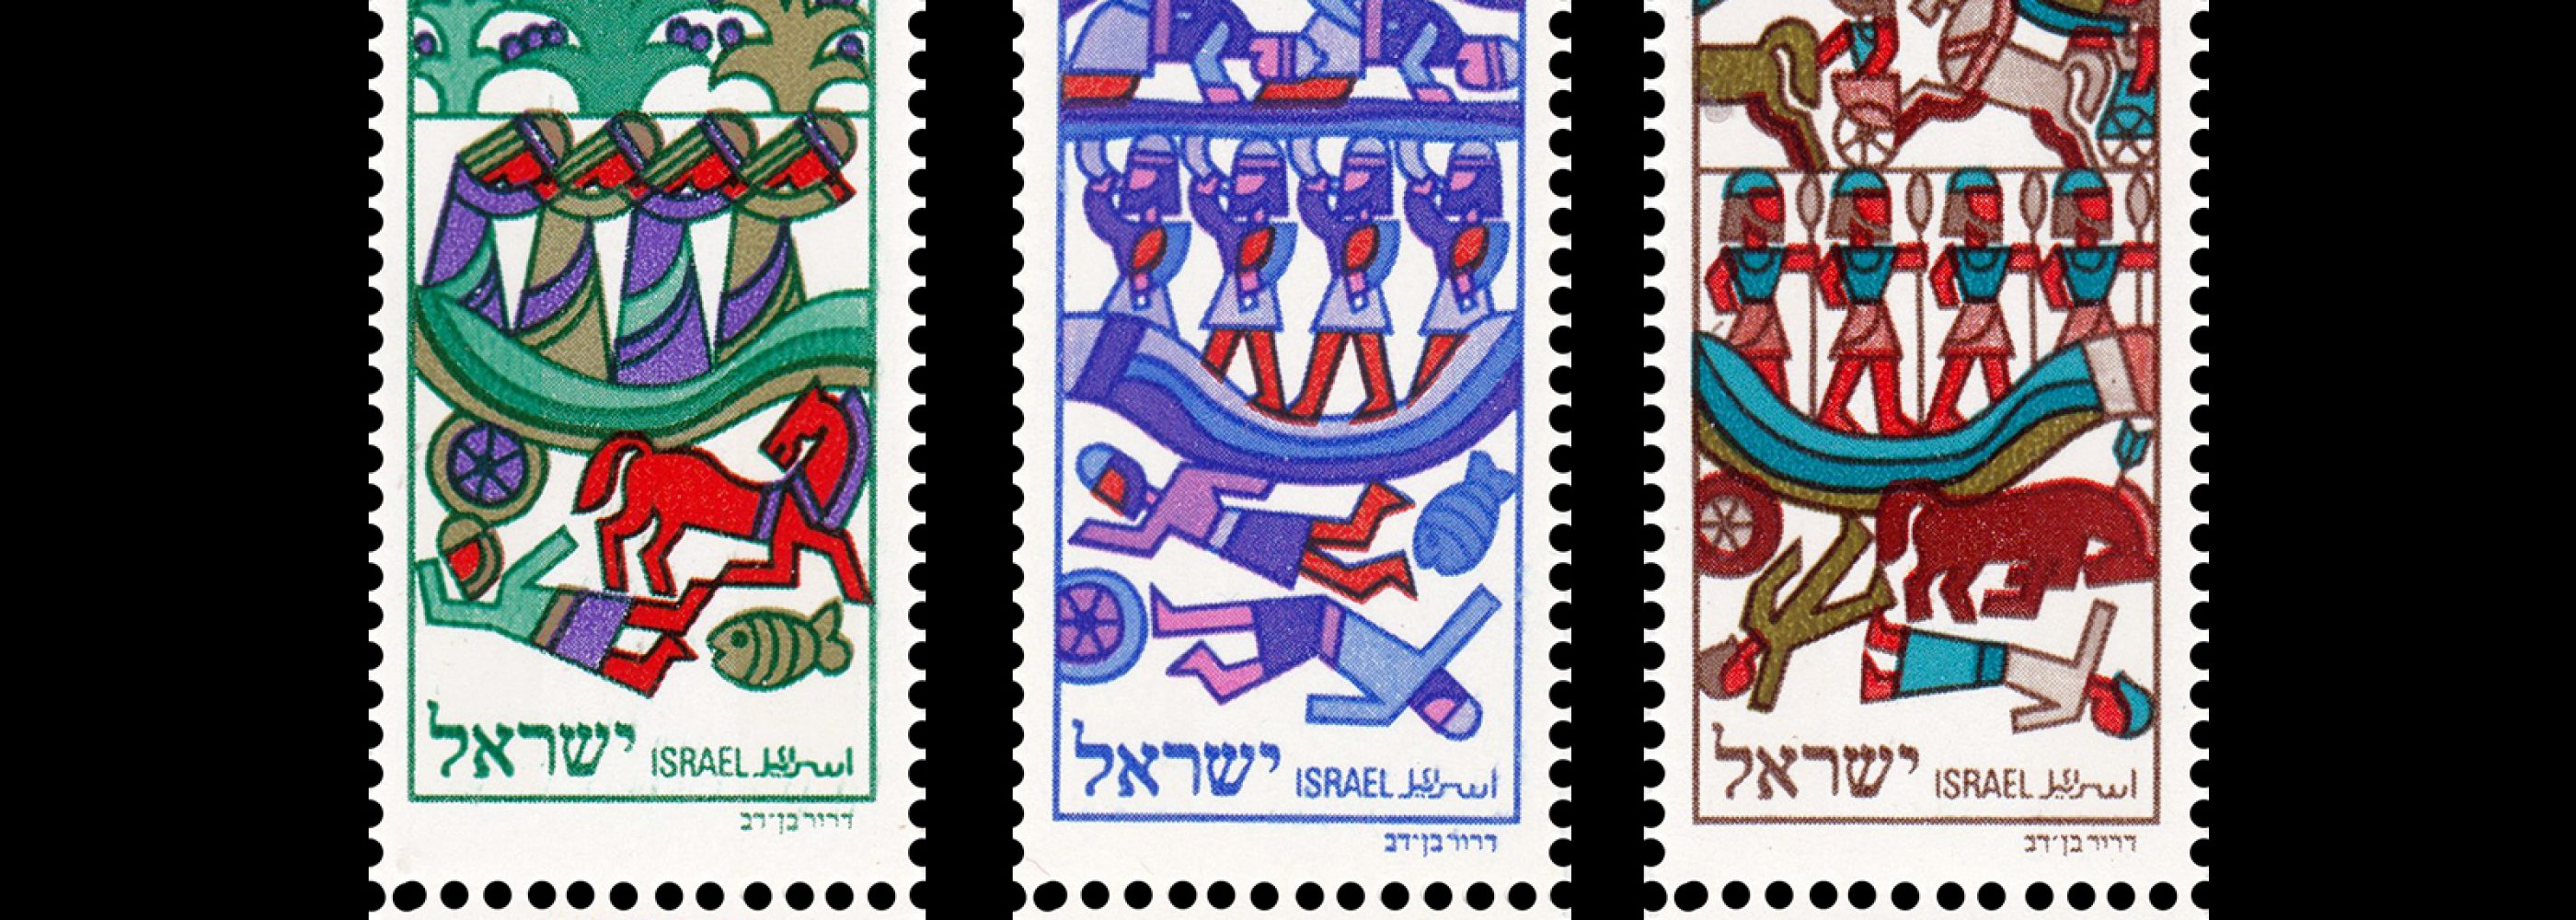 Judges of Israel, Stamp Set 1975 designed by D. Ben Dov